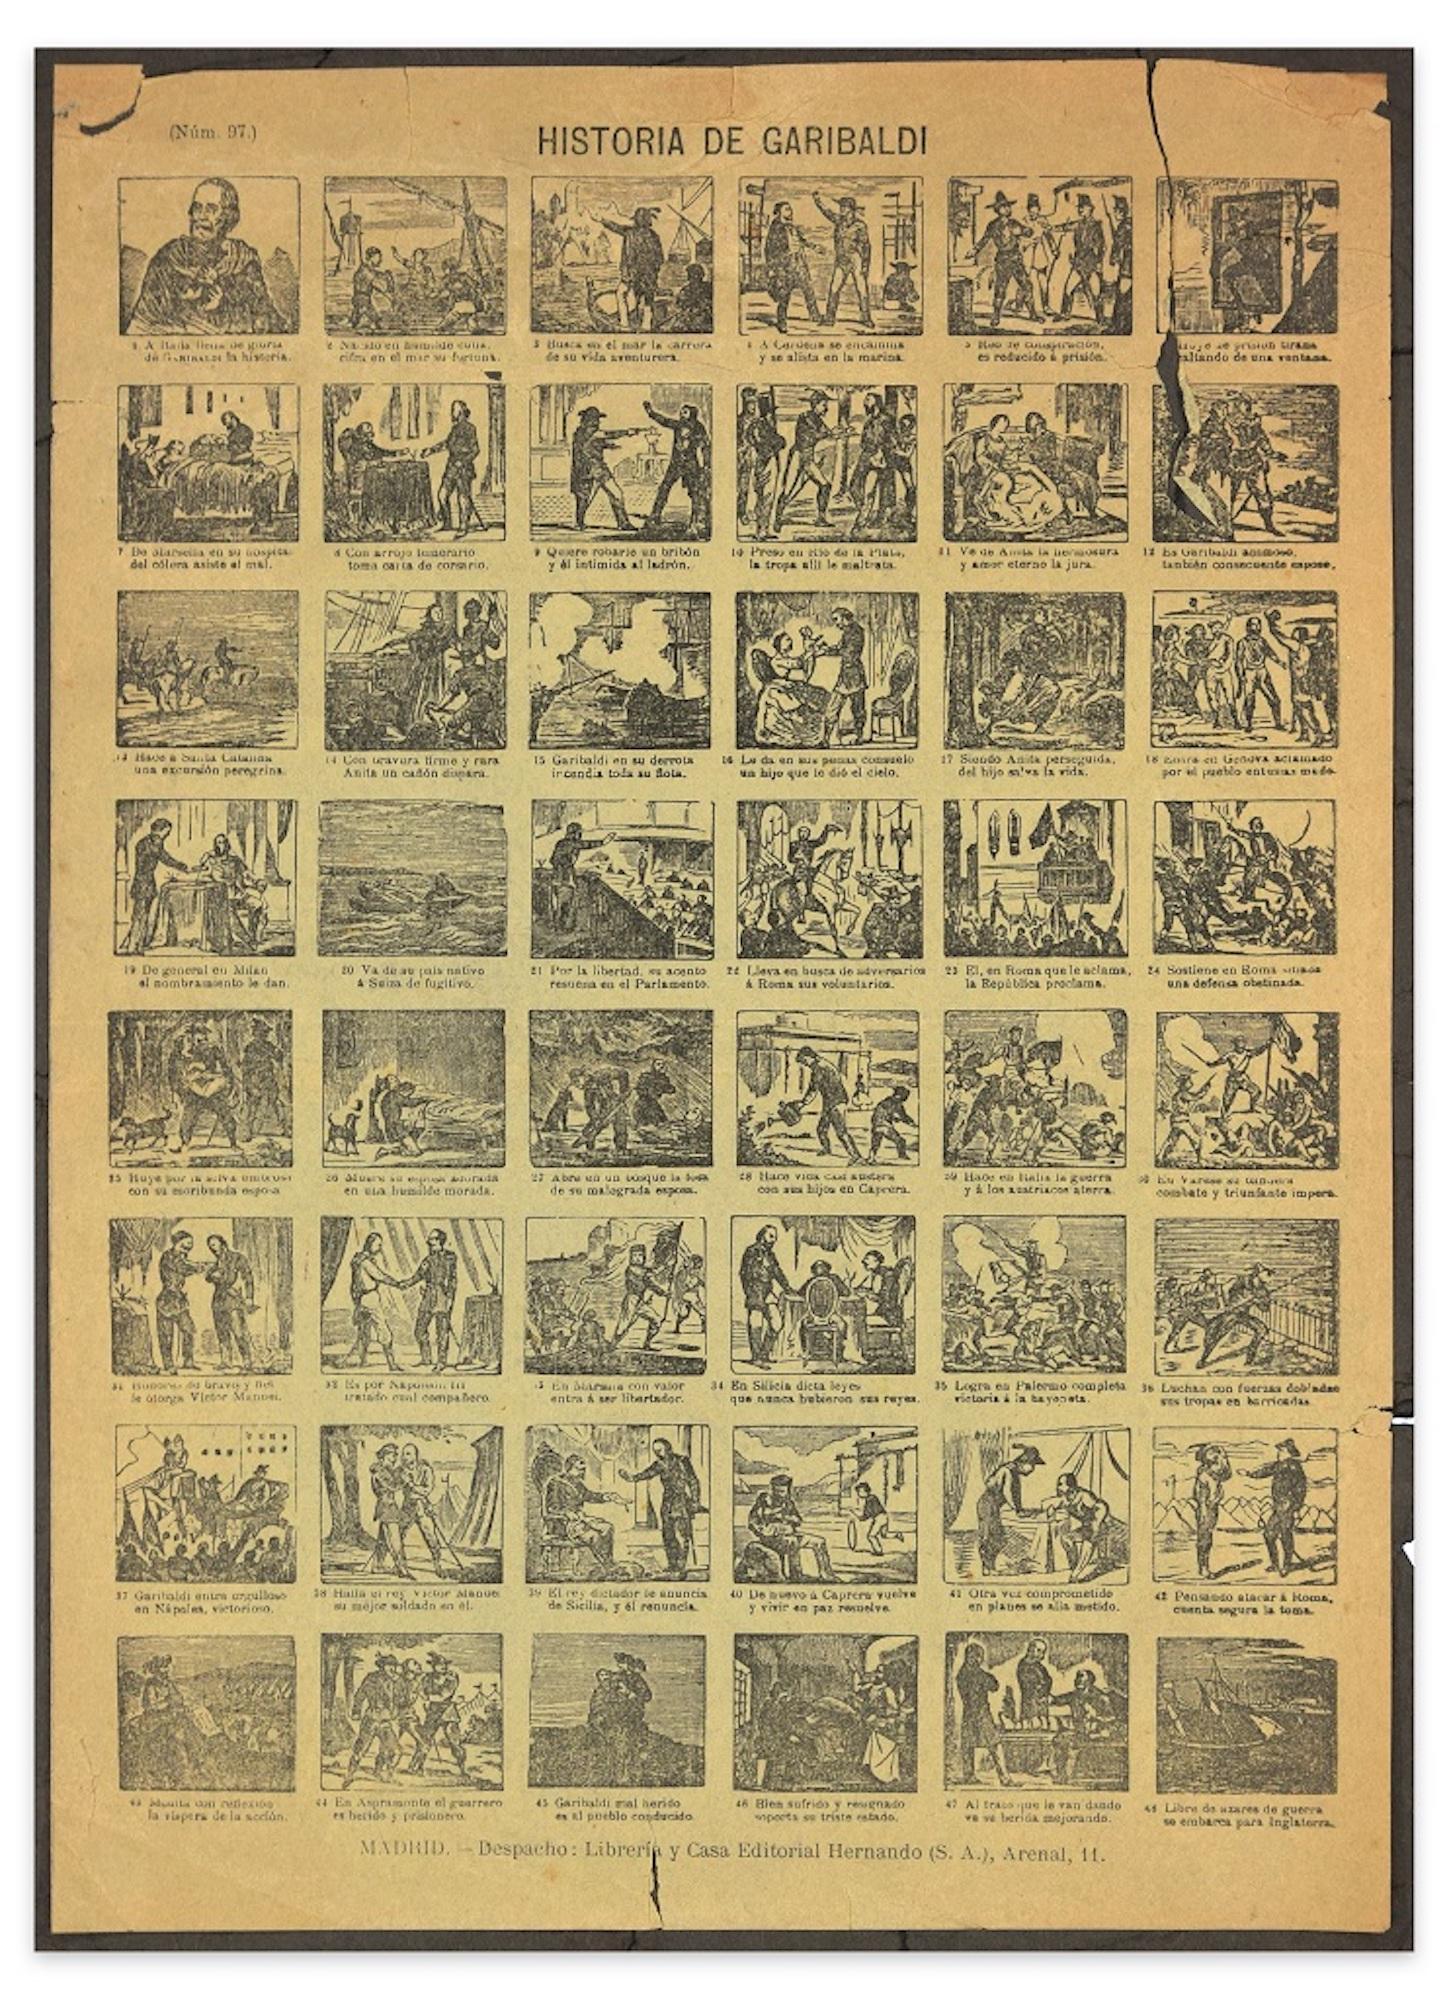 Unknown Figurative Print - Historia de Garibaldi - Group of 48 Original Woodcuts - Late 19th Century